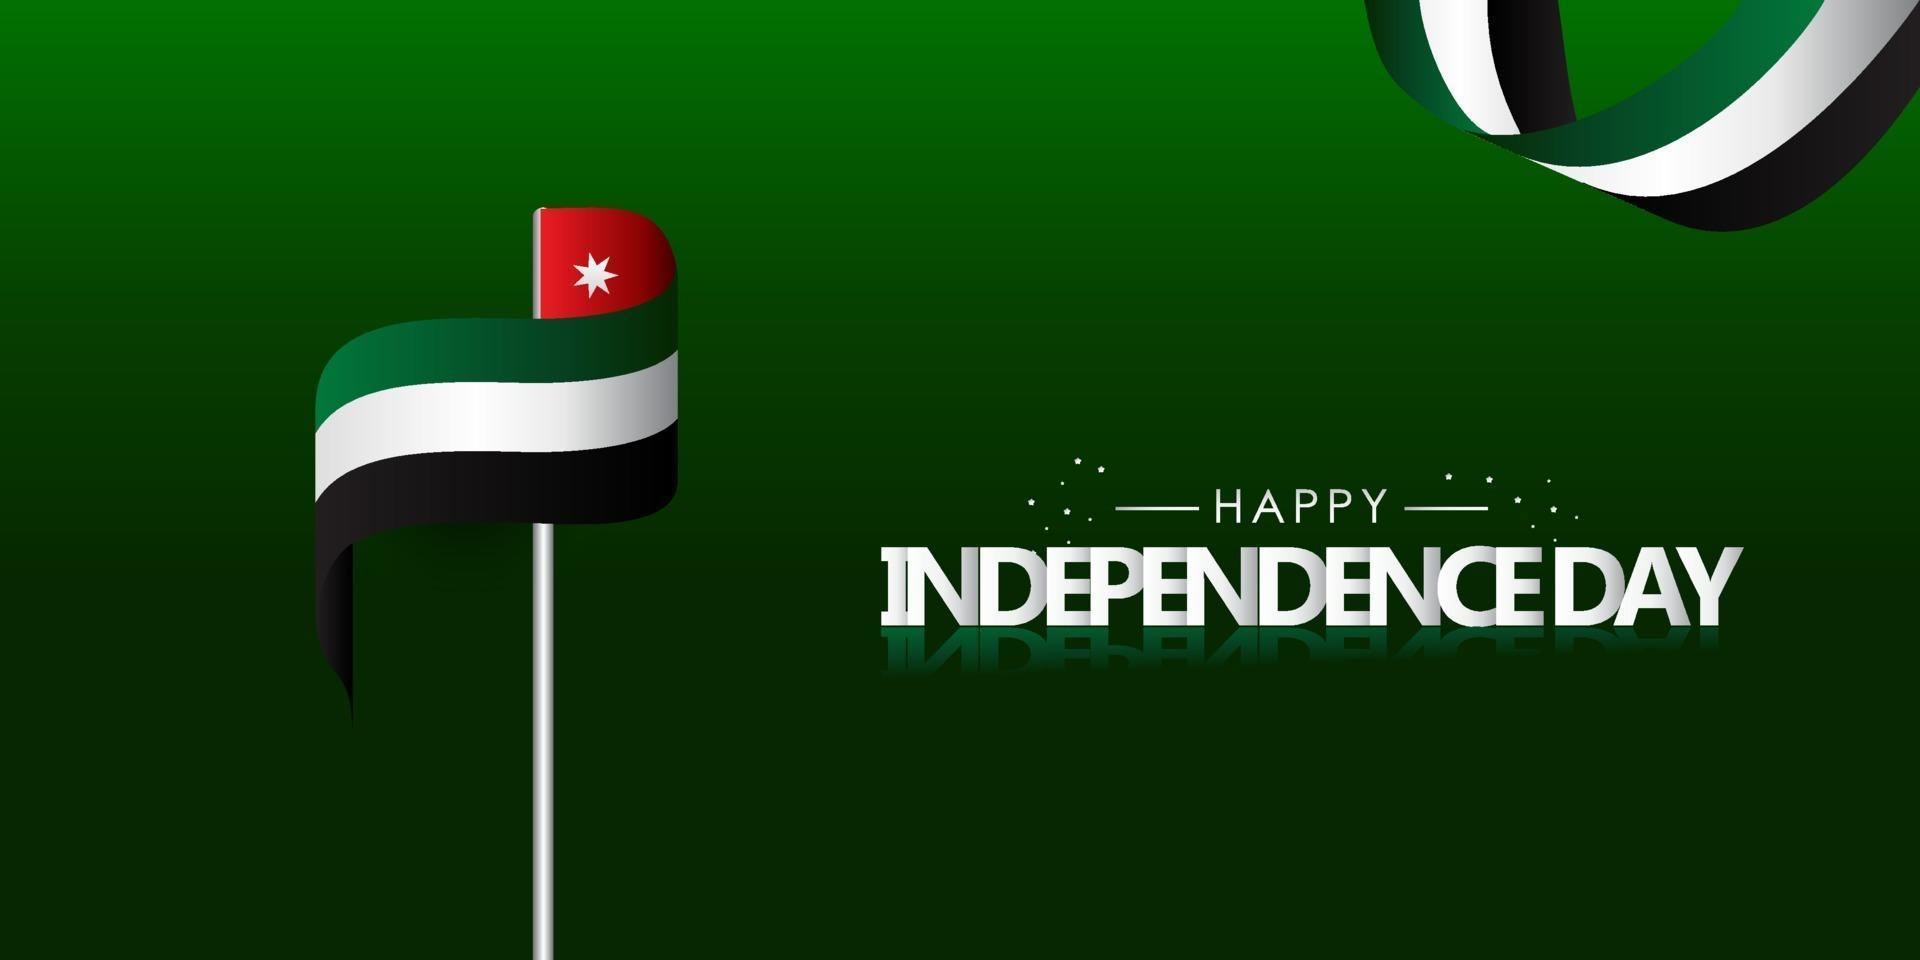 feliz dia da independência da Jordânia design plano de fundo vetor